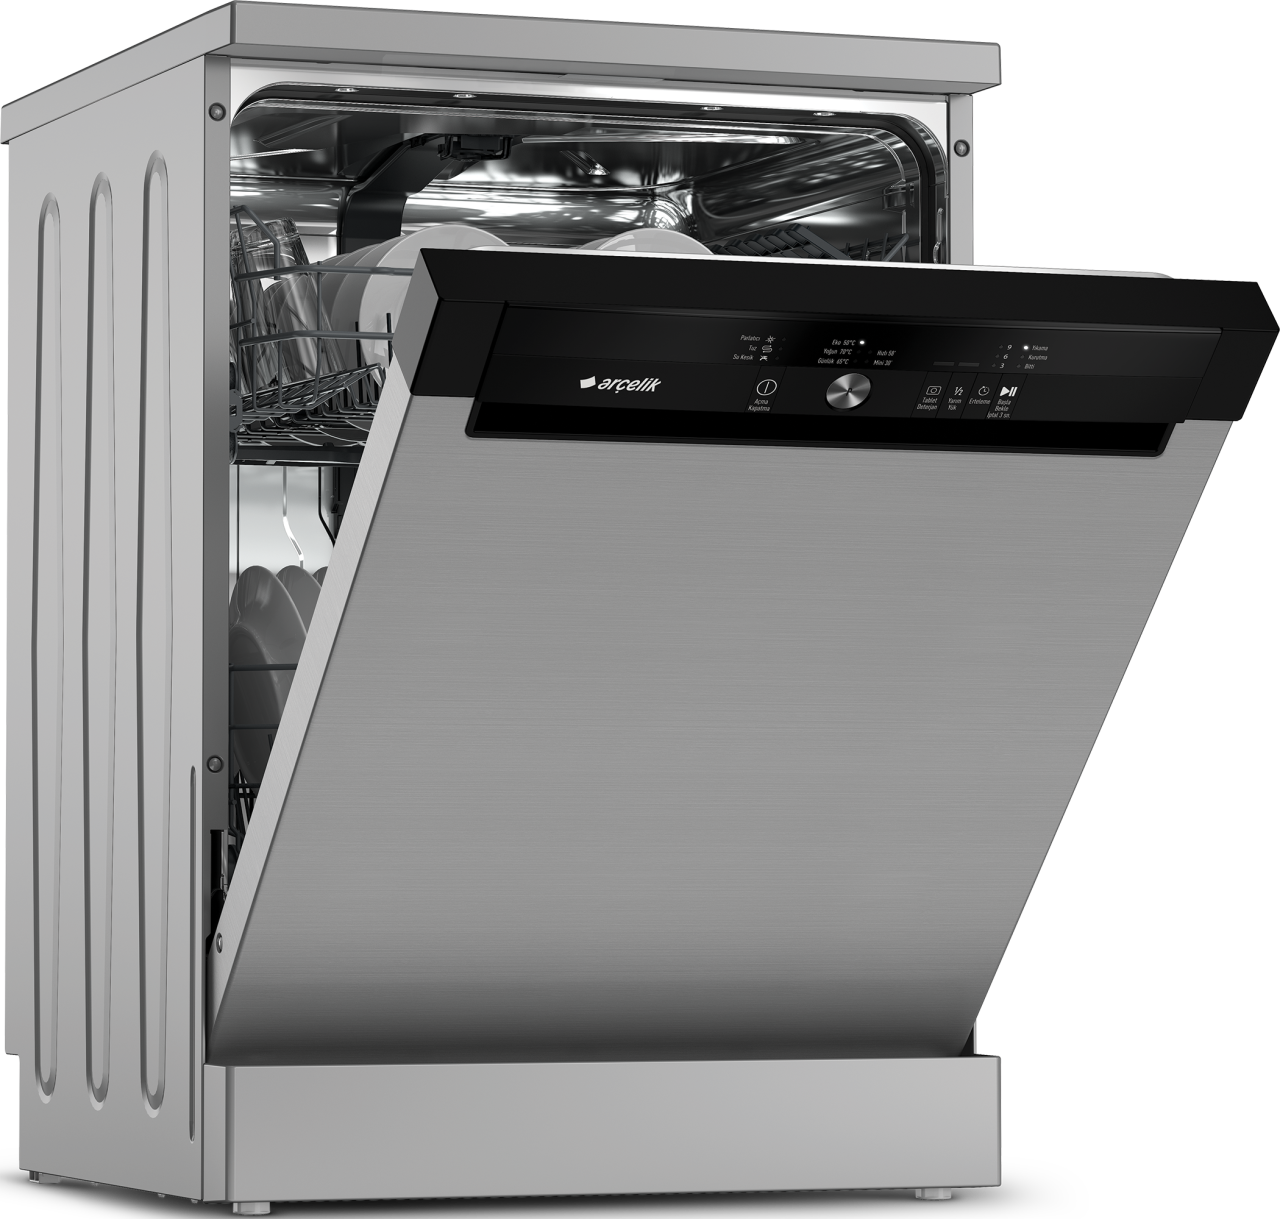 Посудомоечная машина с баком для воды. Арчелик посудомоечная машина. Посудомоечная машина Arcelik 6343 дисплей. Arcelik посудомоечная машина Старая модель. Bulasik Mak.